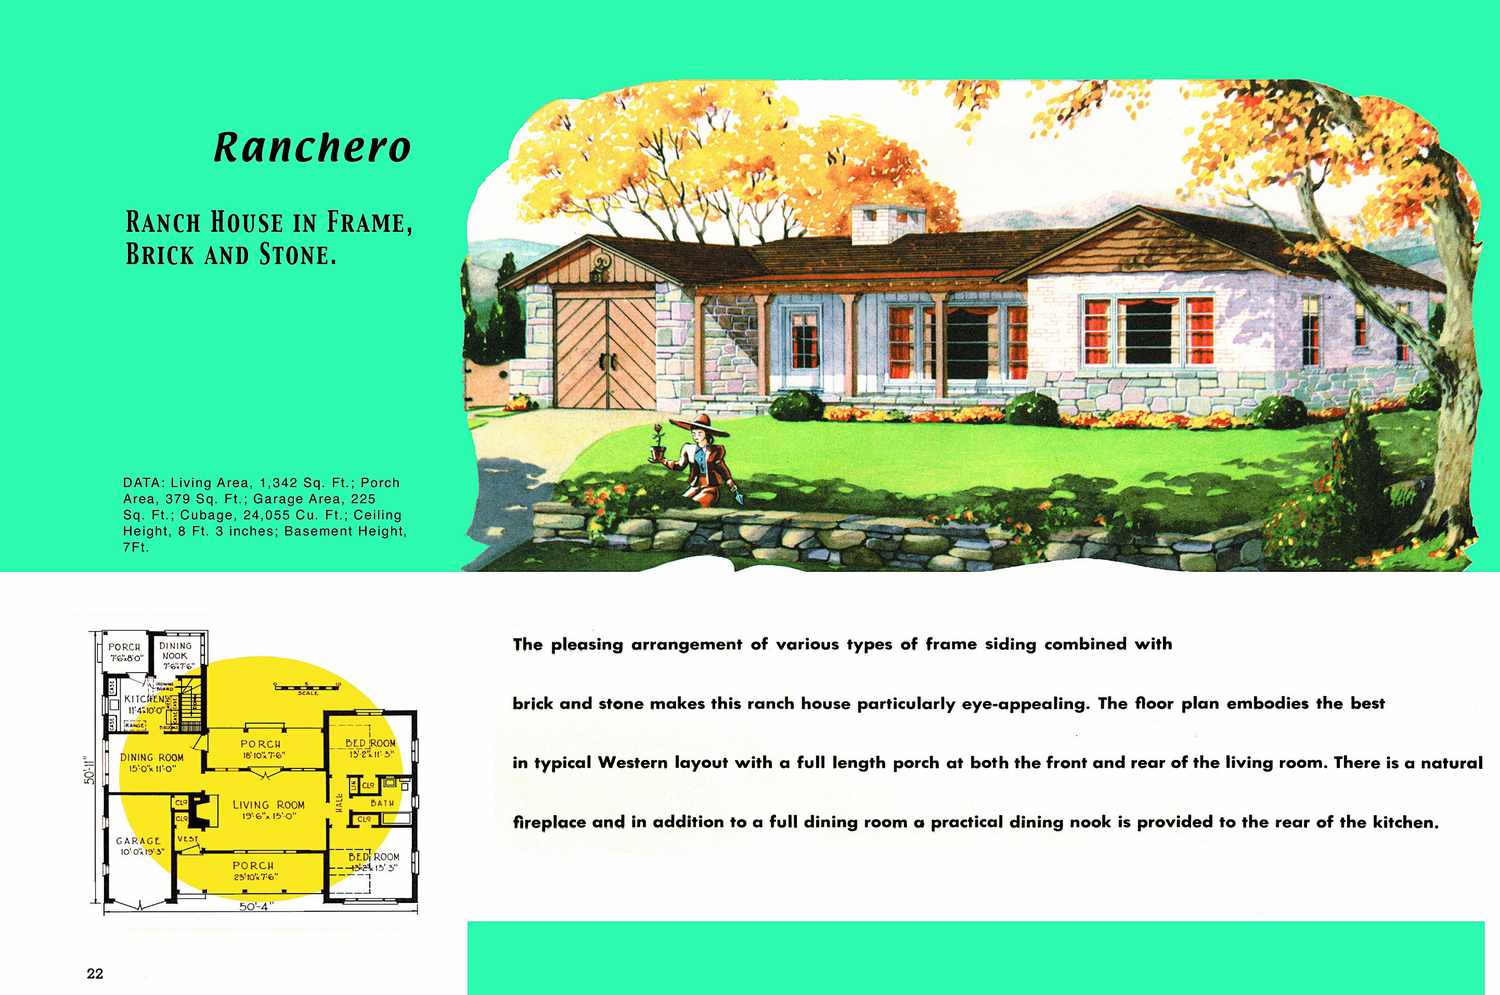 Plano de planta de los años 50 y representación de casa estilo rancho acertadamente llamada Ranchero